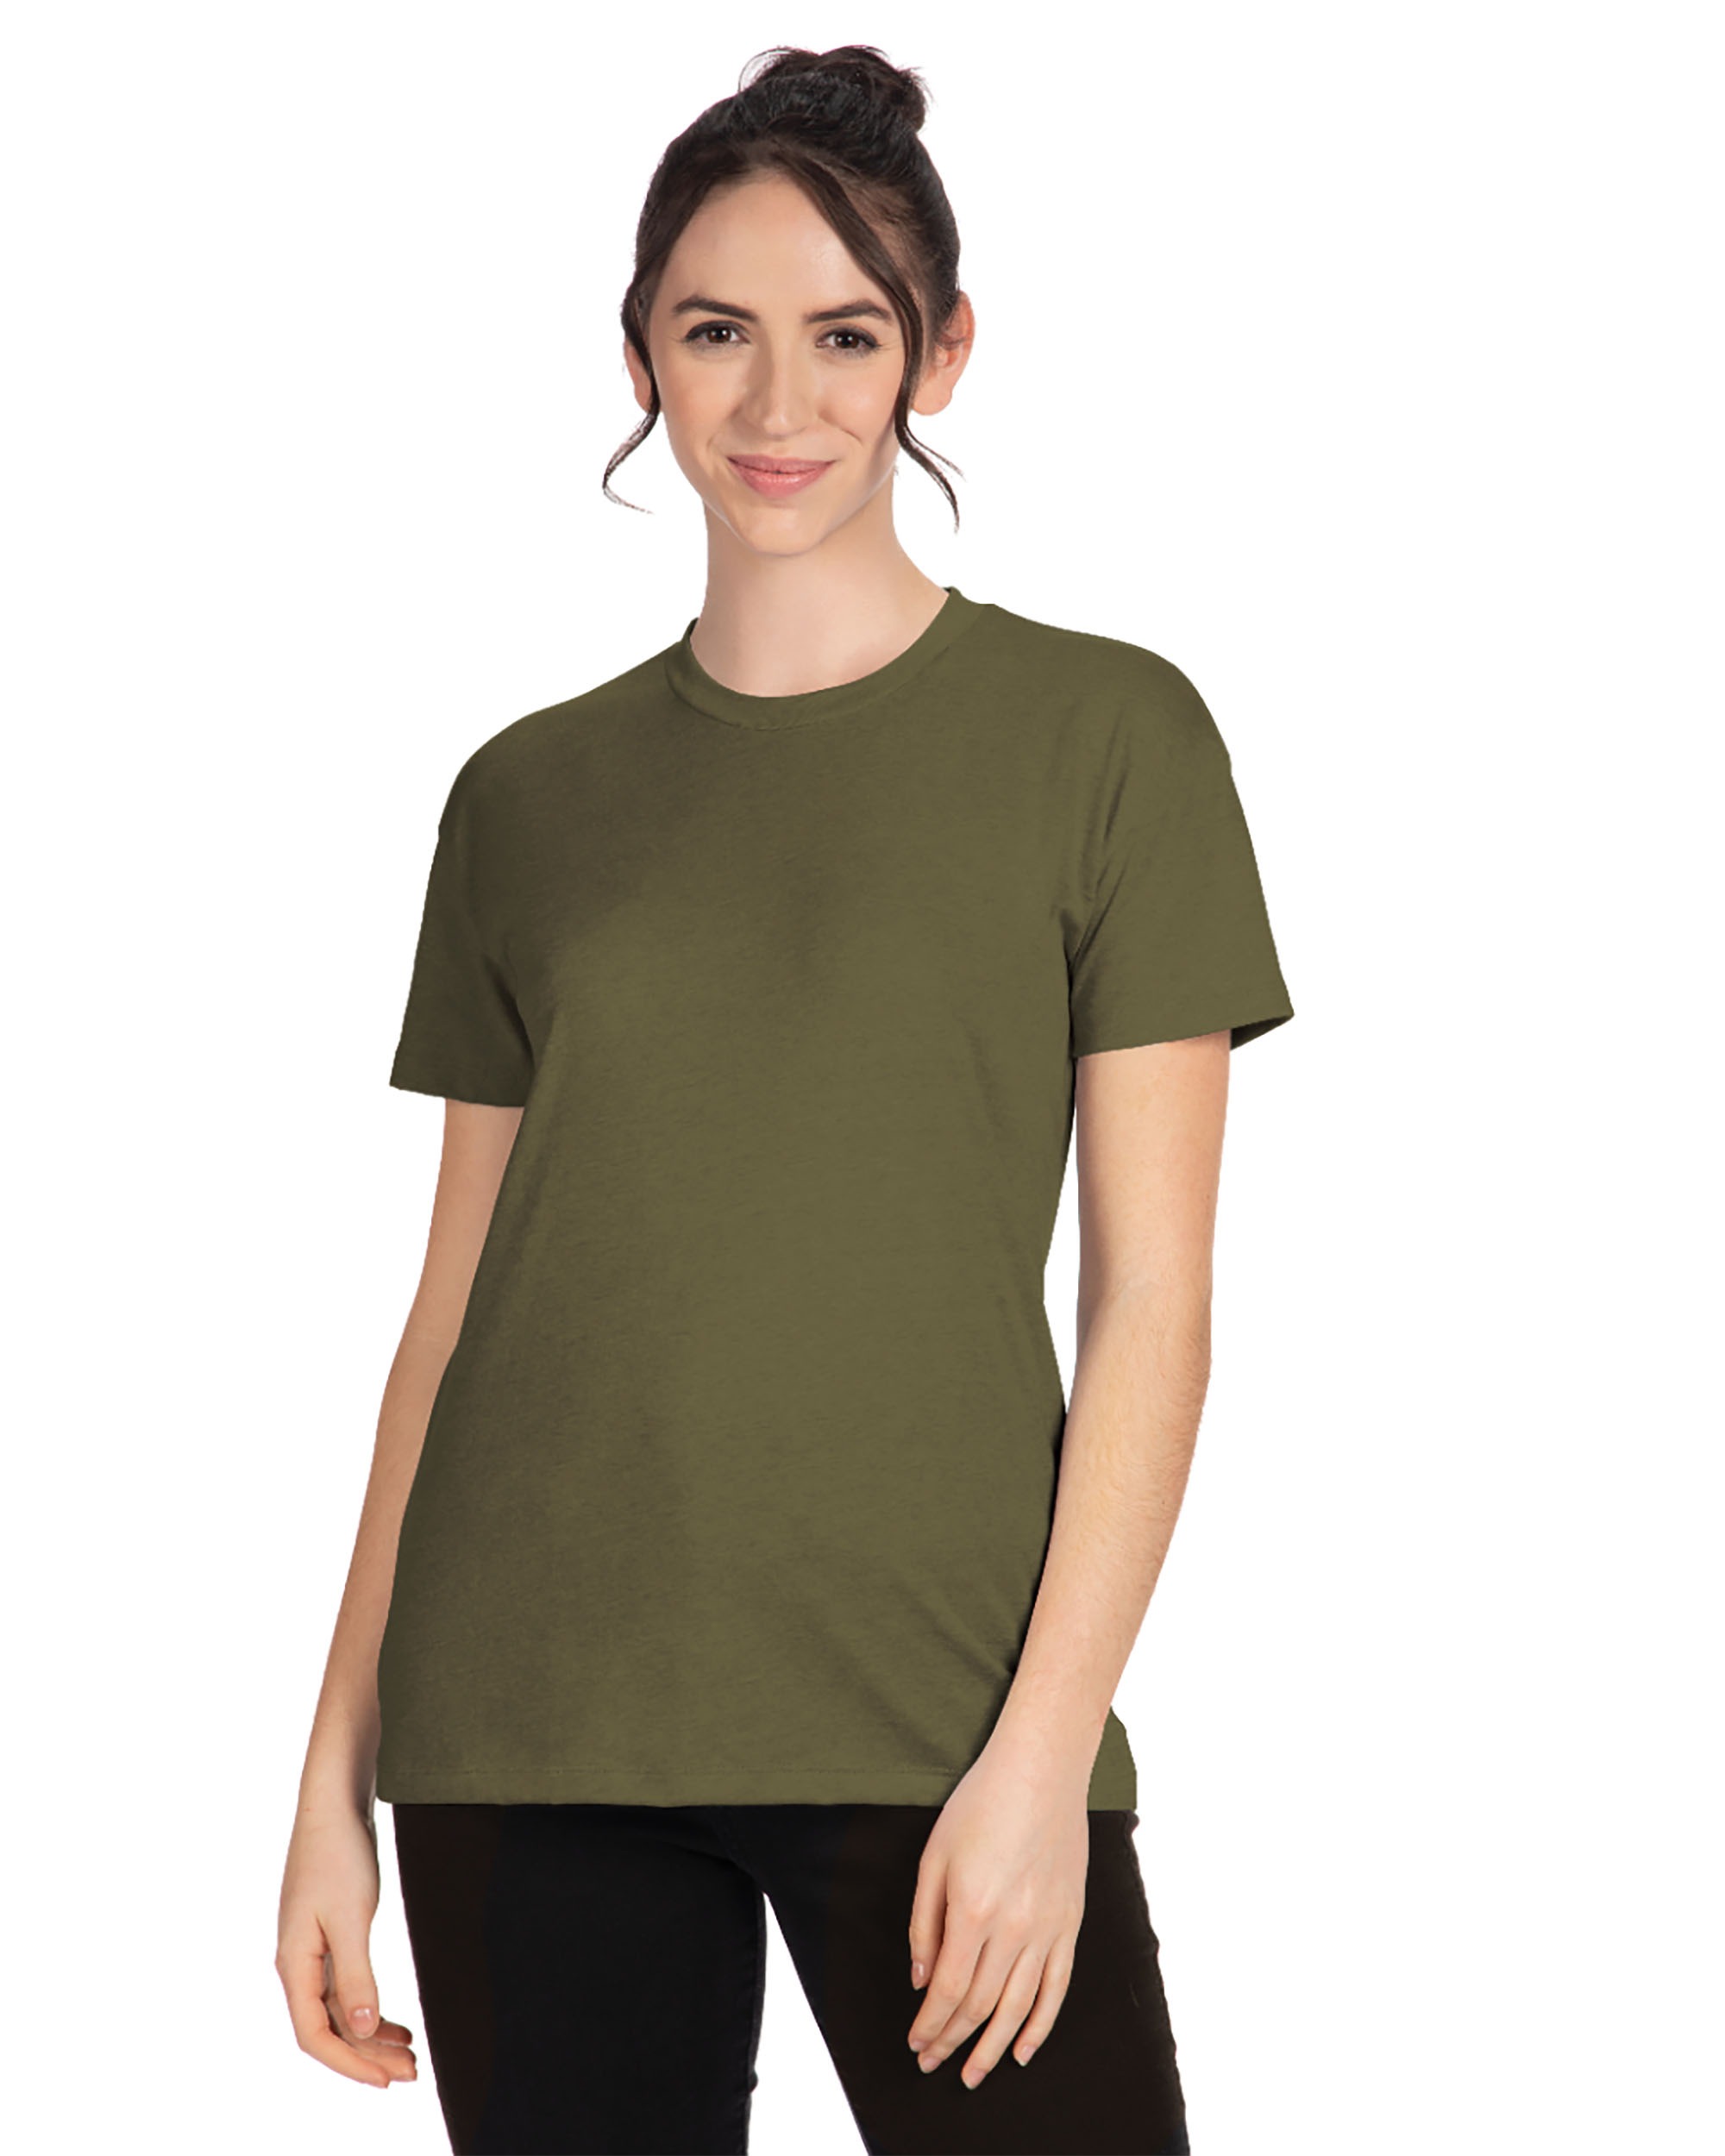 Next Level Apparel® 6600 Women's CVC Relaxed T-Shirt